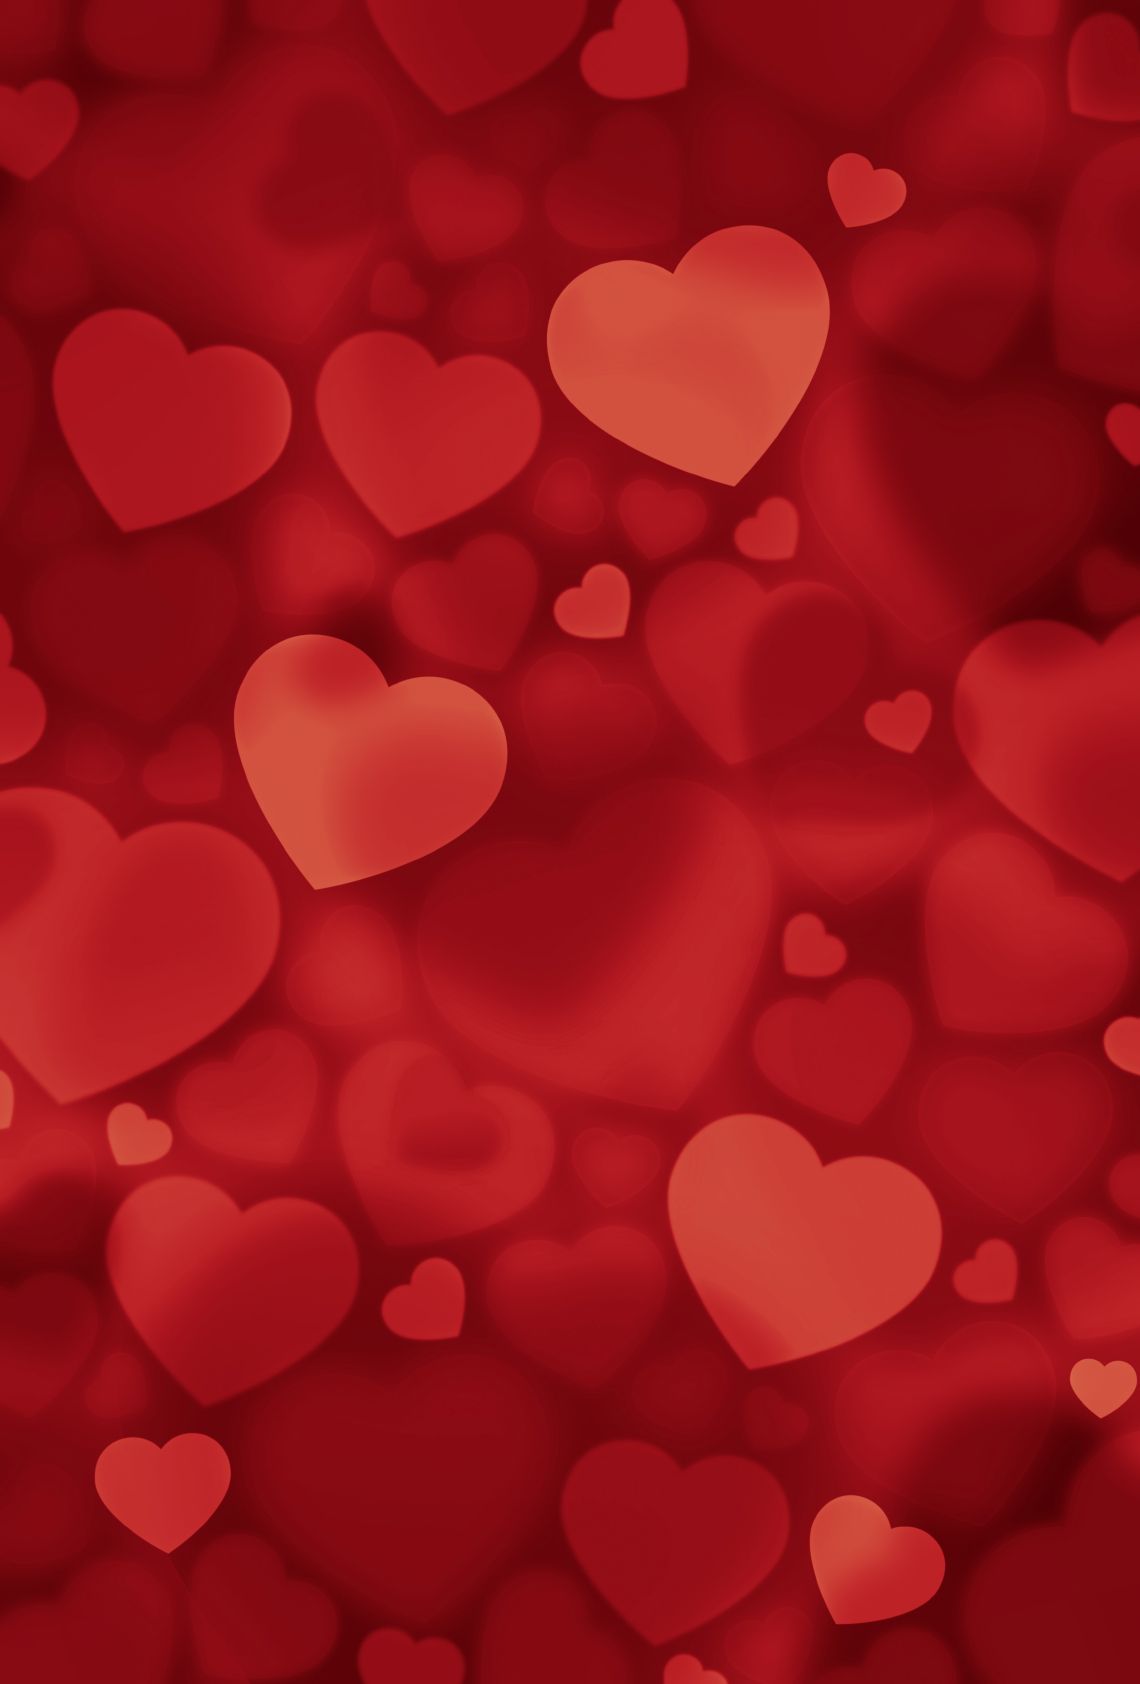 Descargar Red Hearts Wallpapers gratis - Fondo de pantalla rojo con corazones